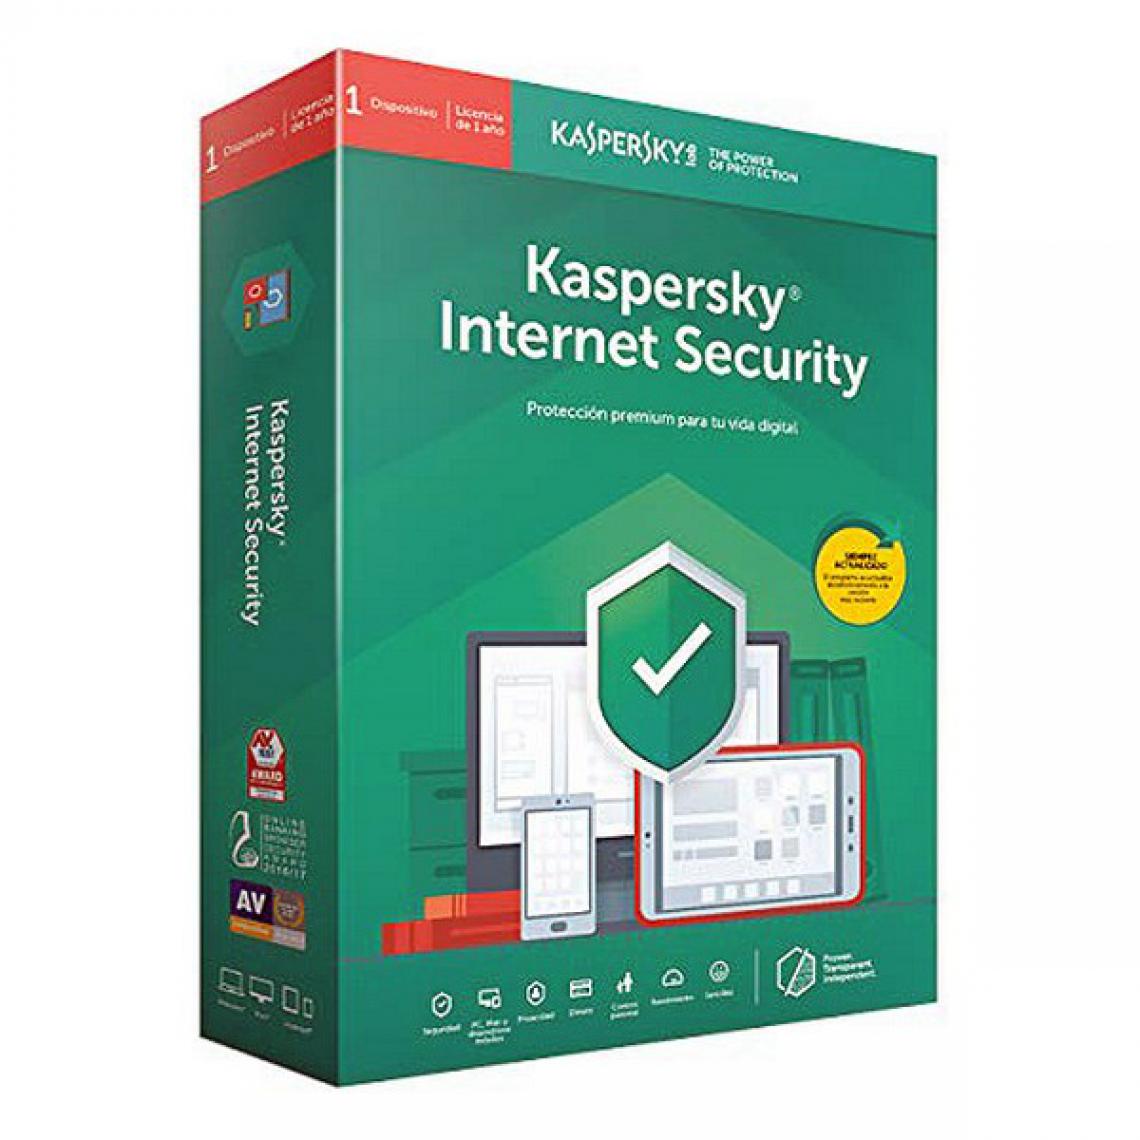 Kaspersky - Antivirus Maison Kaspersky 2020 Choisissez votre option 3 licences - Traitement de Texte & Tableur